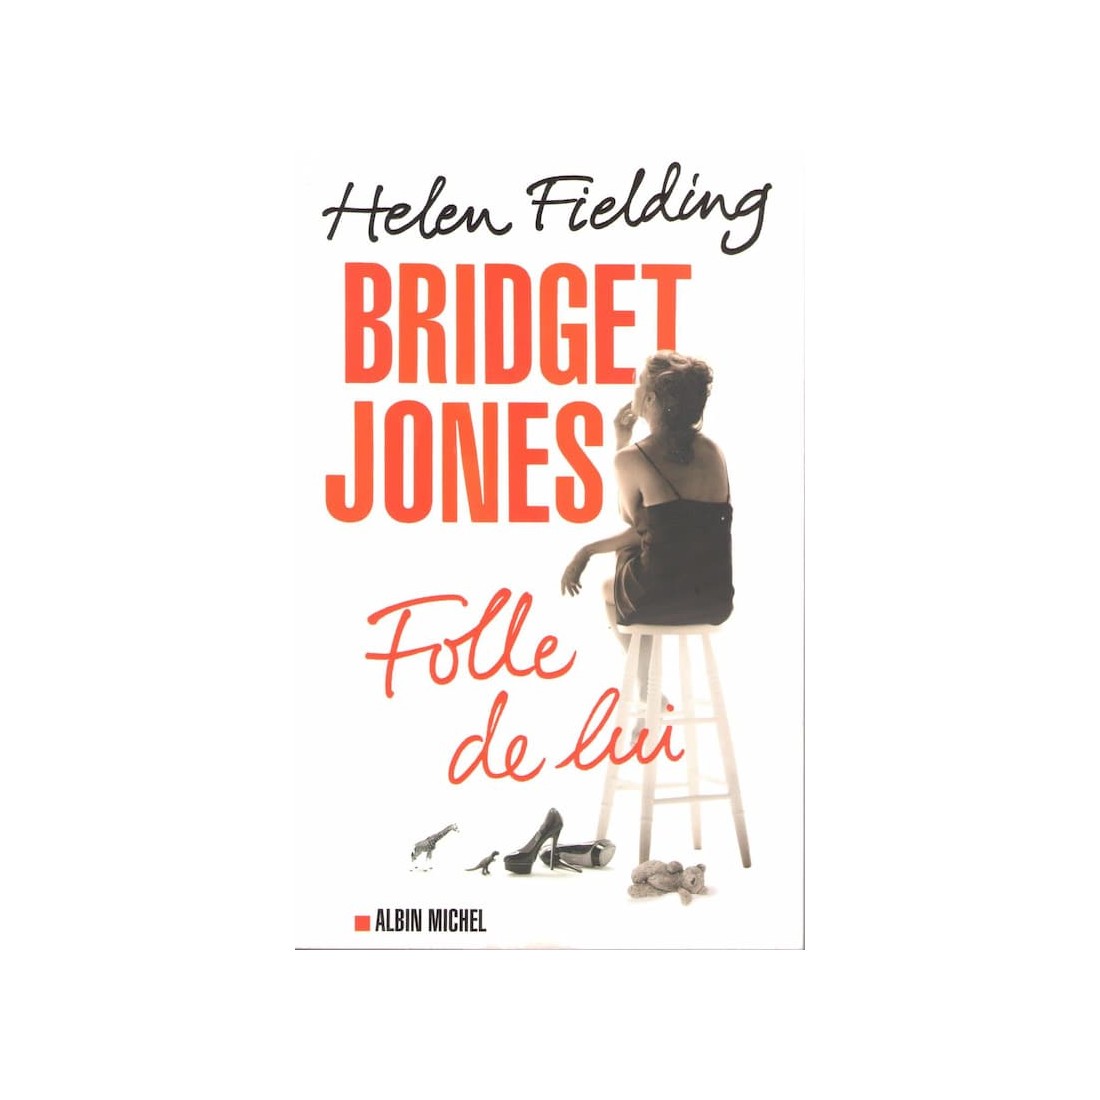 Bridget Jones - Folle de lui - Roman de Helen Fielding